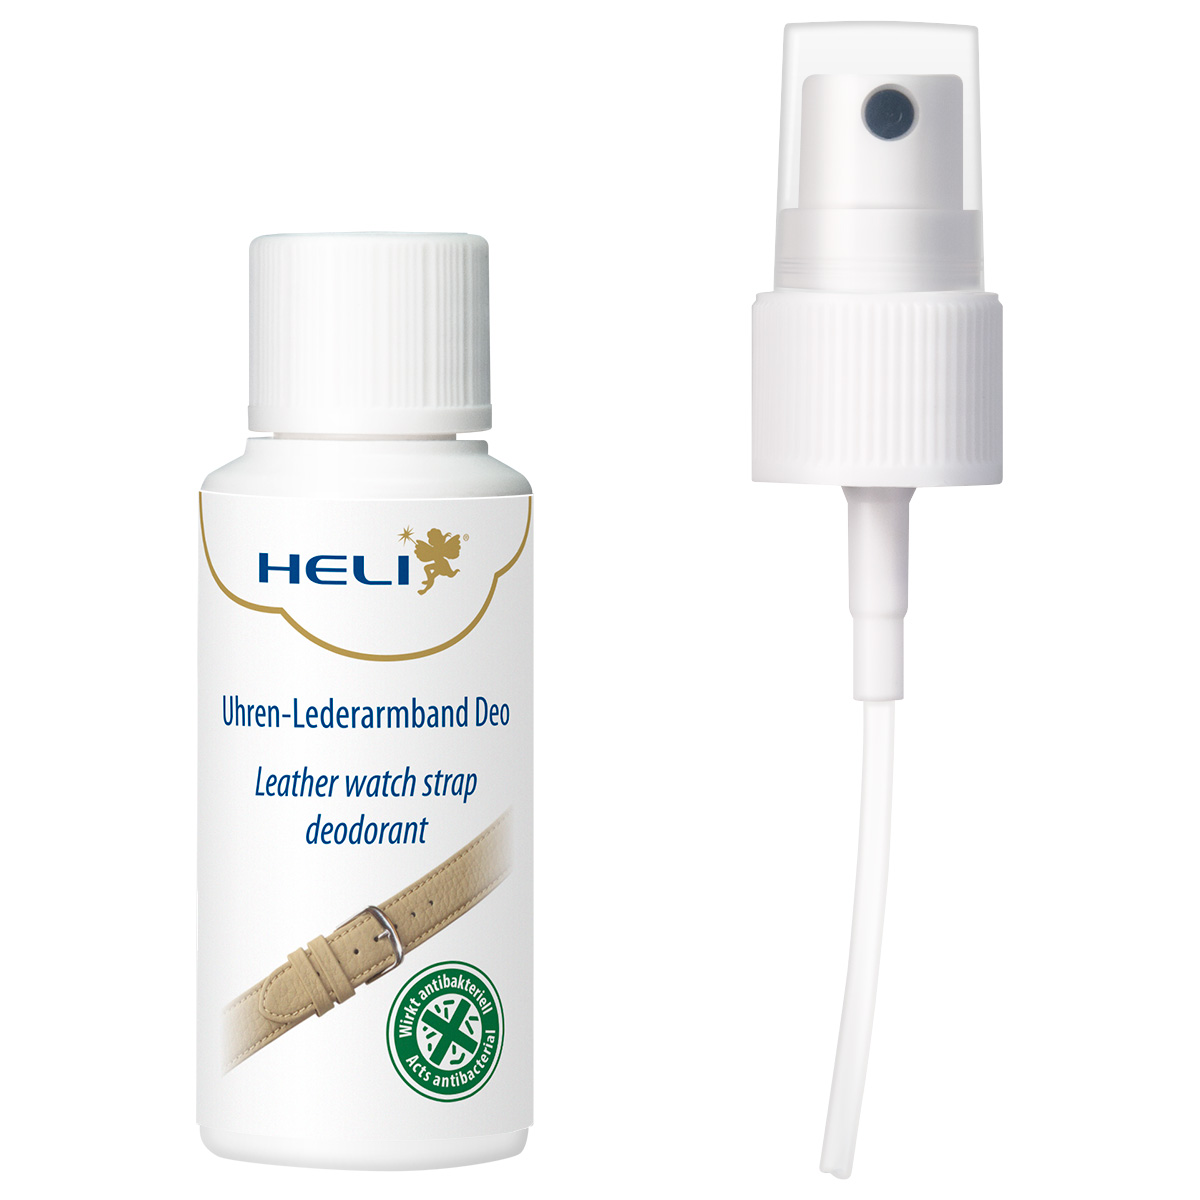 Heli watch leather strap deodorant with odor neutralizer, 30 ml, pocket sized